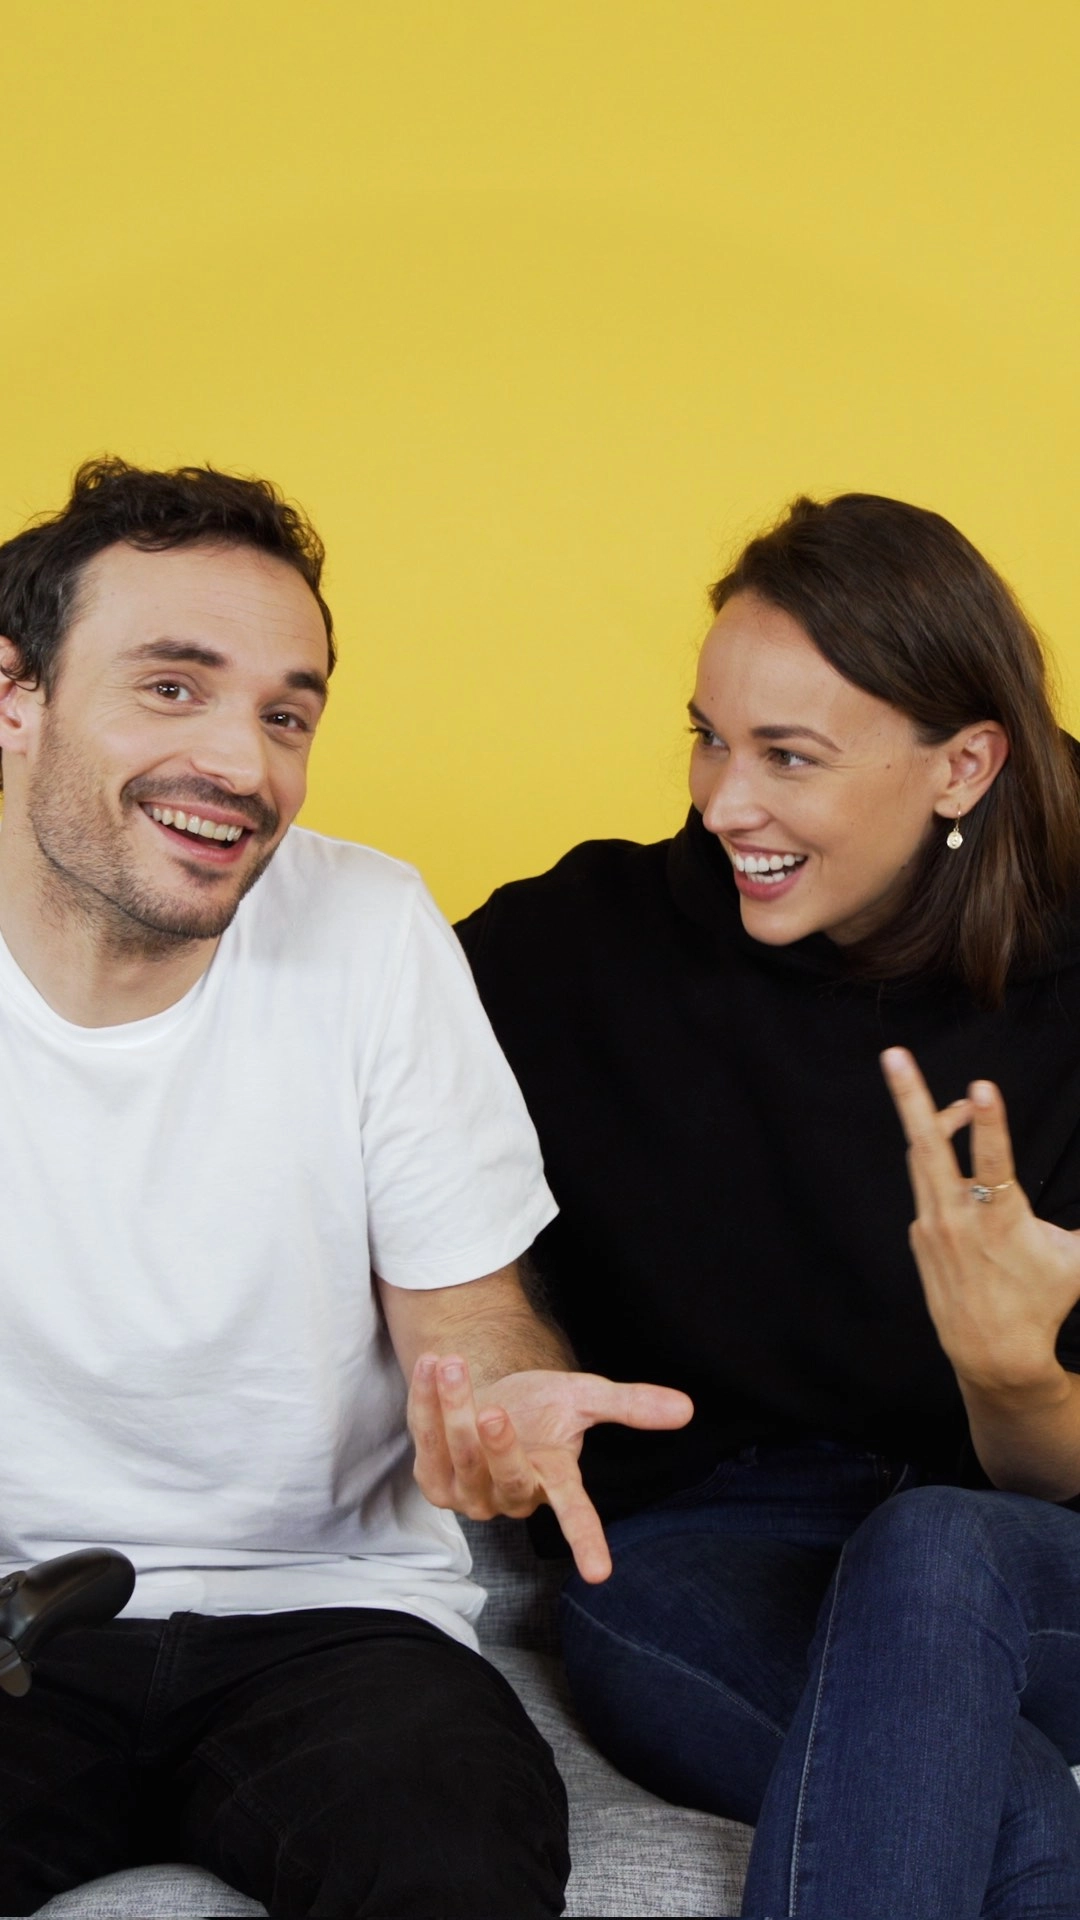 Vidéo : Le Crash Test de Jérôme Niel et Audrey Pirault